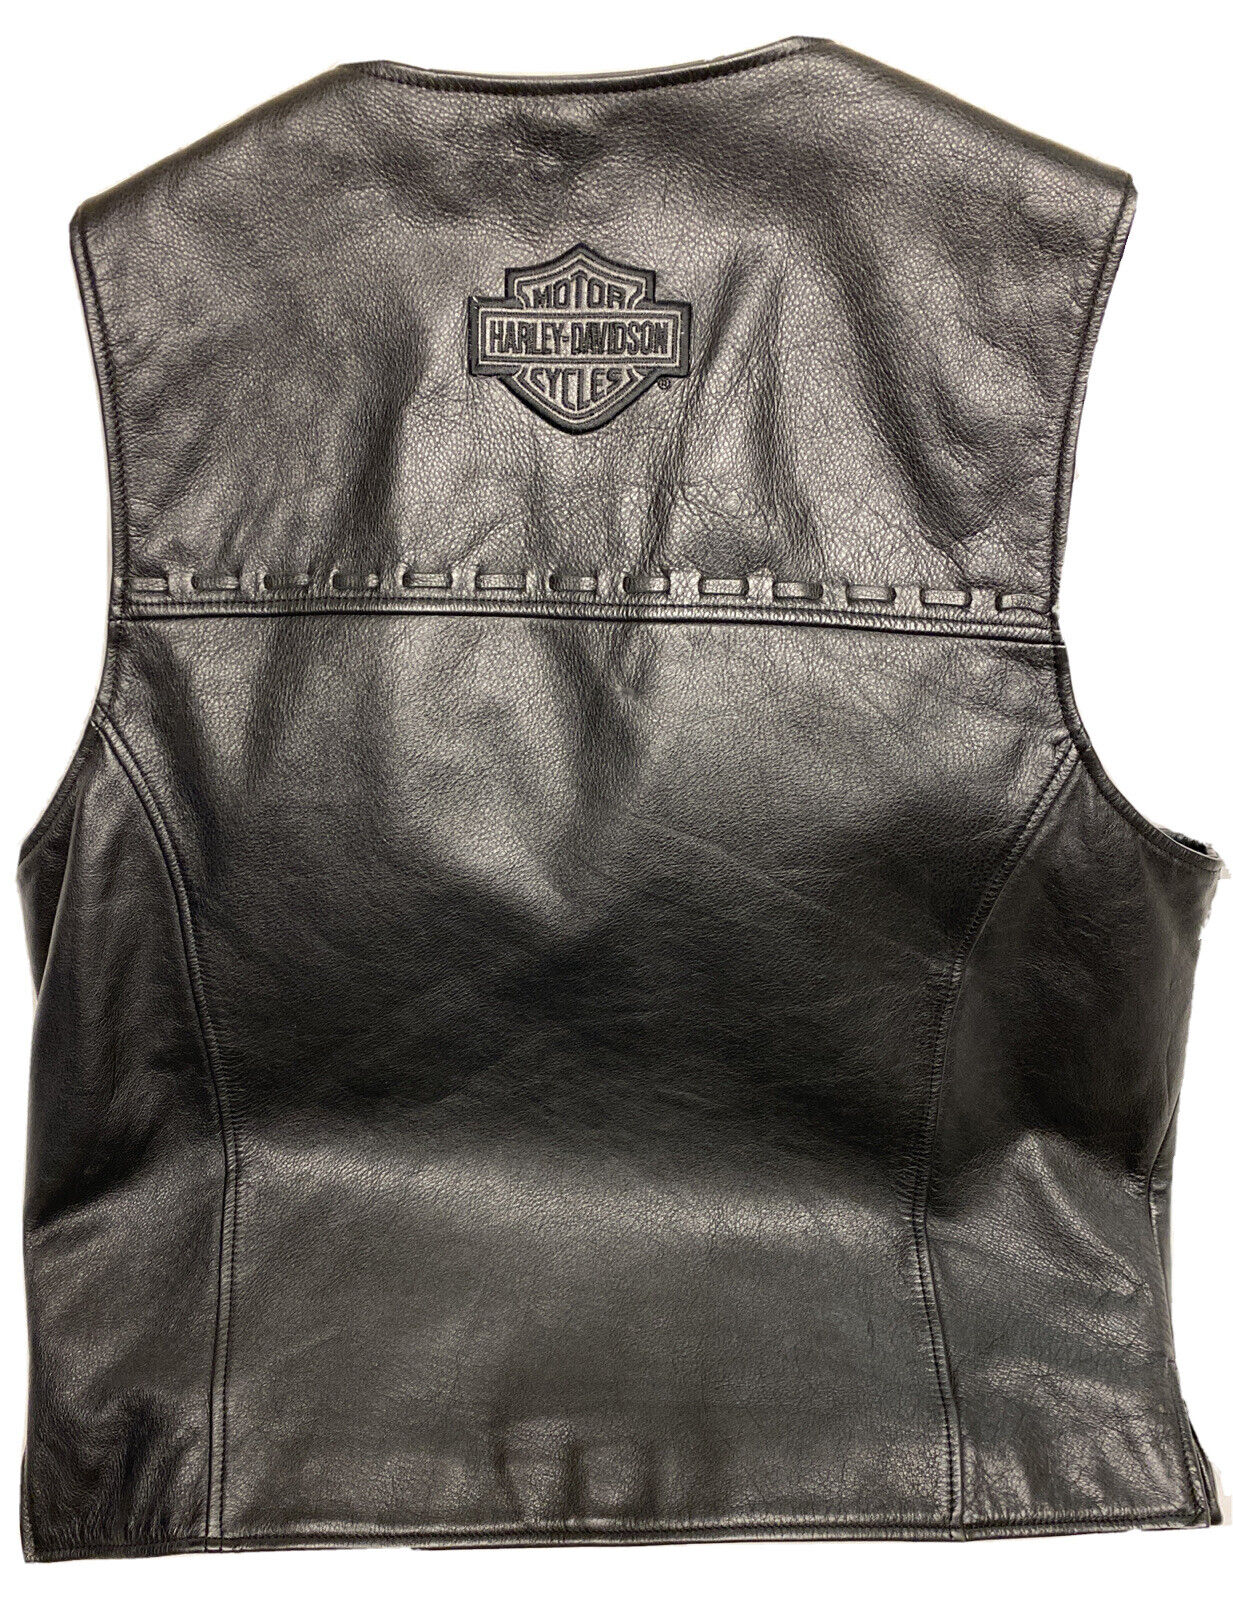 Harley Davidson Men’s Black Thick Leather Vest  Size Large